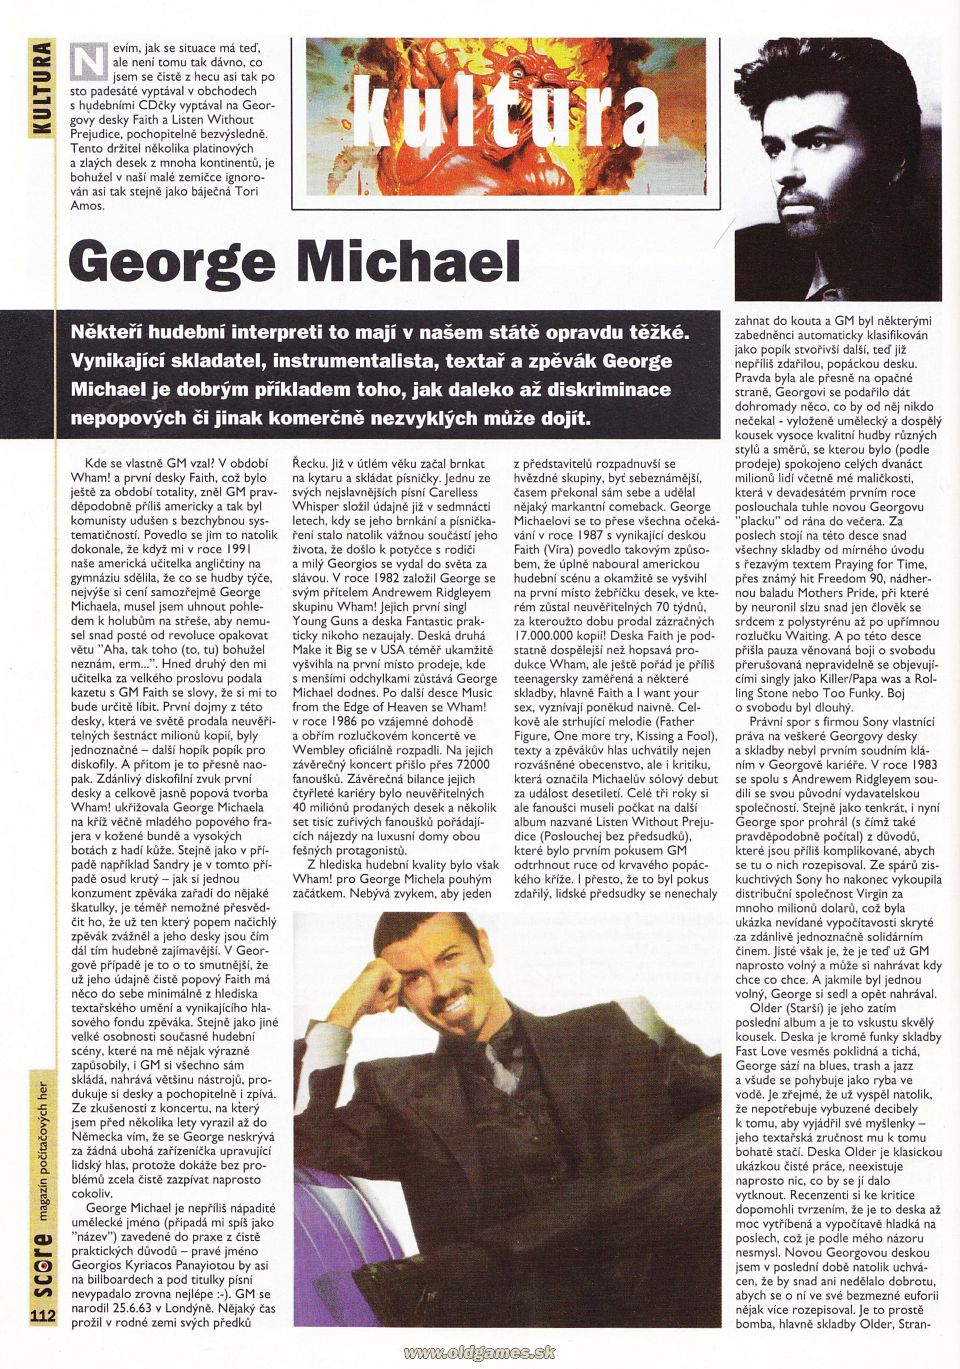 Kultura: George Michael